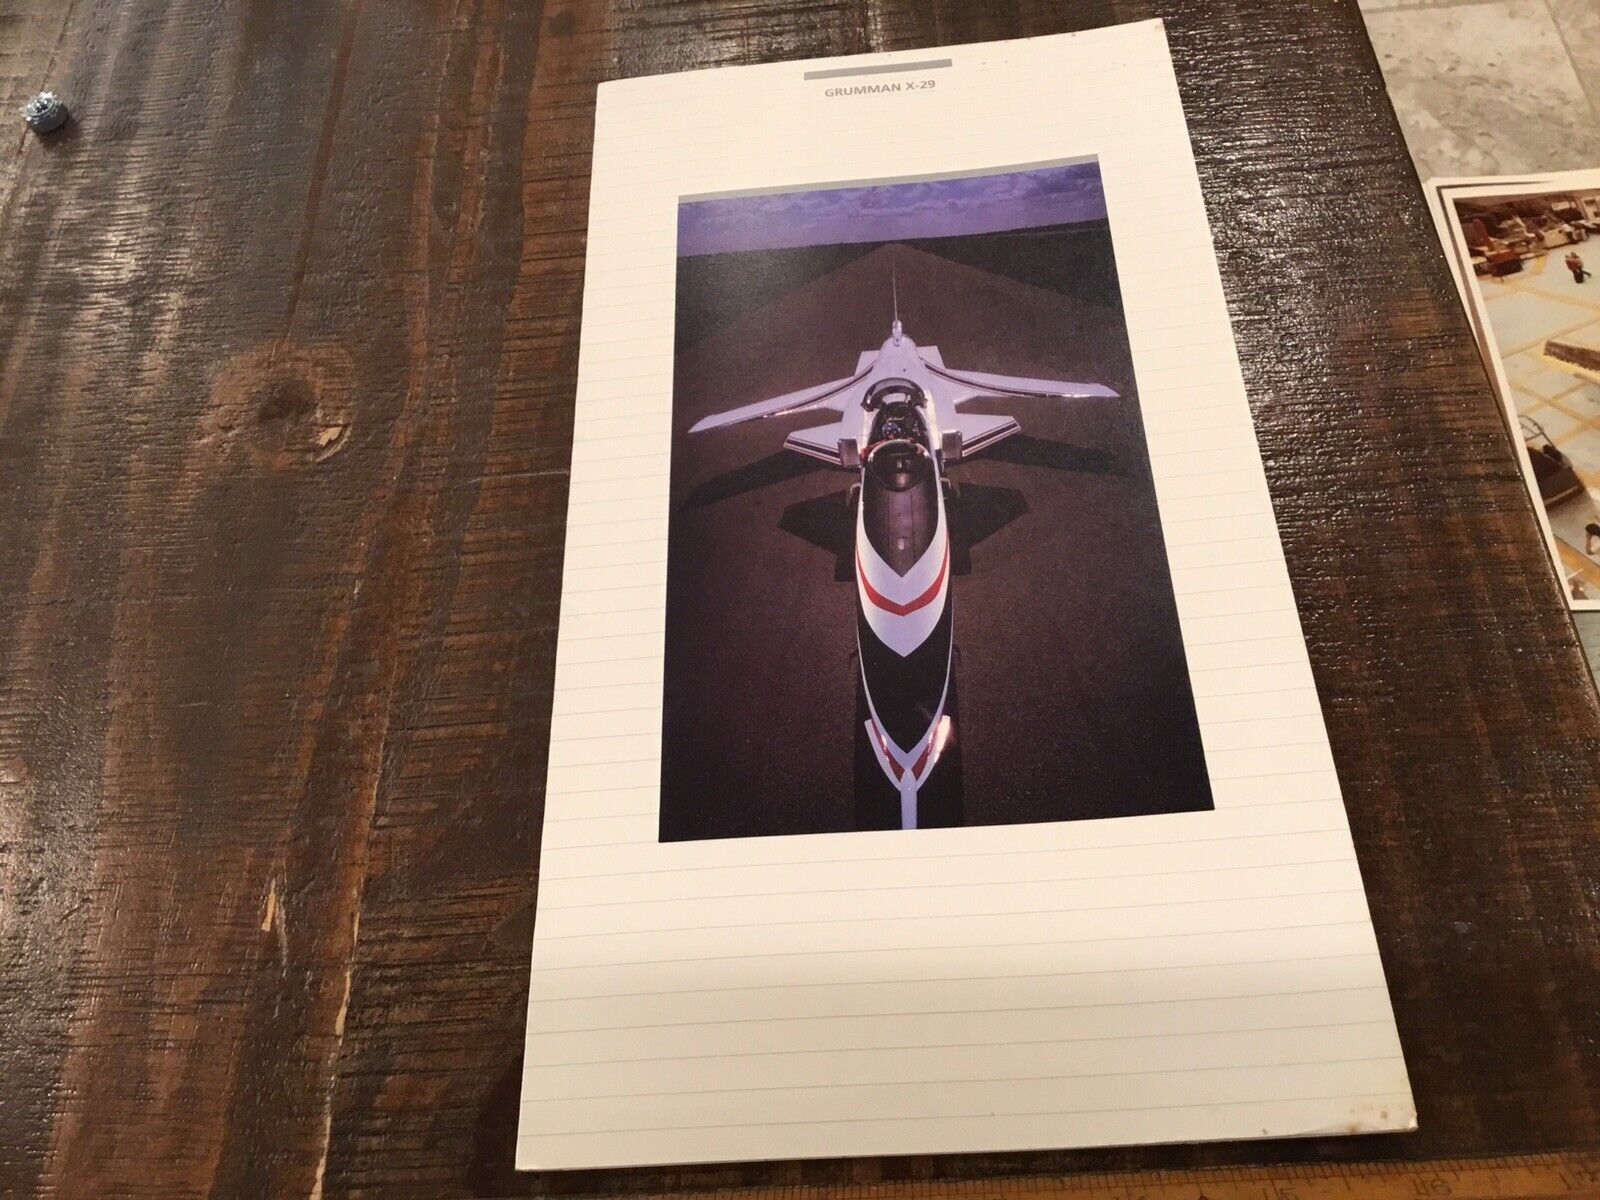 ORIGINAL VINTAGE GRUMMAN X-29 PROMOTIONAL FOLD OUT BROCHURE BOOKLET